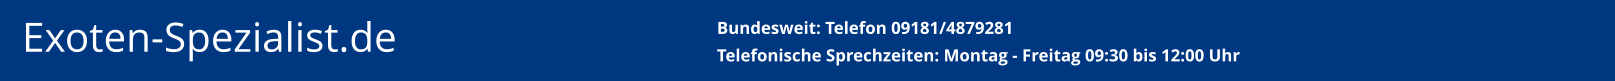 Exoten-Spezialist.de   Bundesweit: Telefon 09181/4879281Telefonische Sprechzeiten: Montag - Freitag 09:30 bis 12:00 Uhr